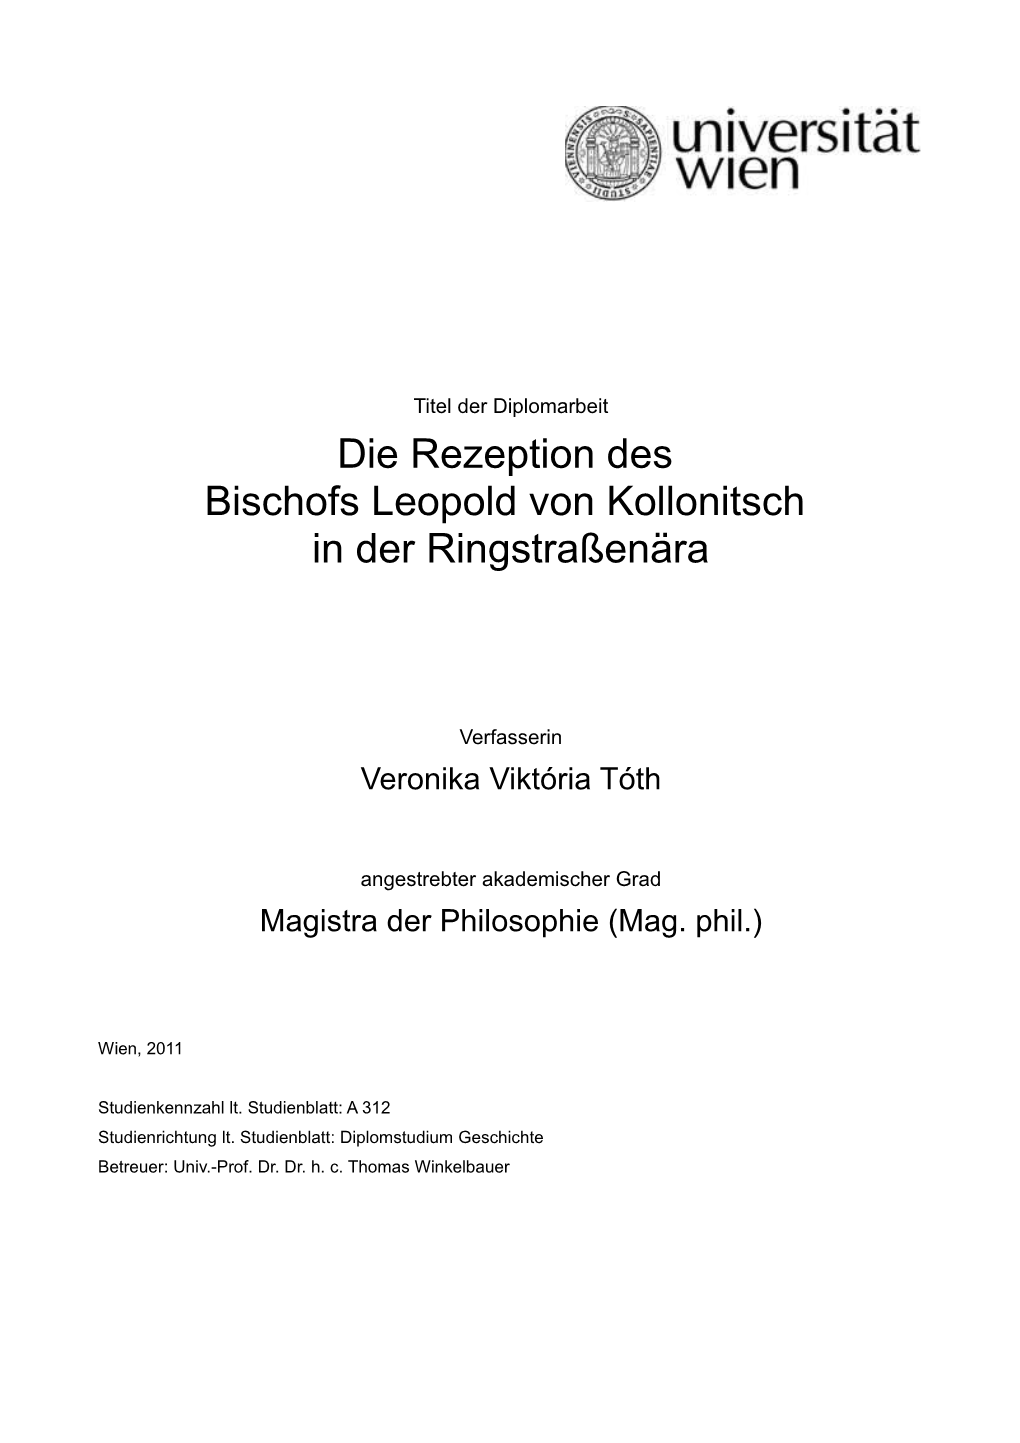 Die Rezeption Des Bischofs Leopold Von Kollonitsch in Der Ringstraßenära